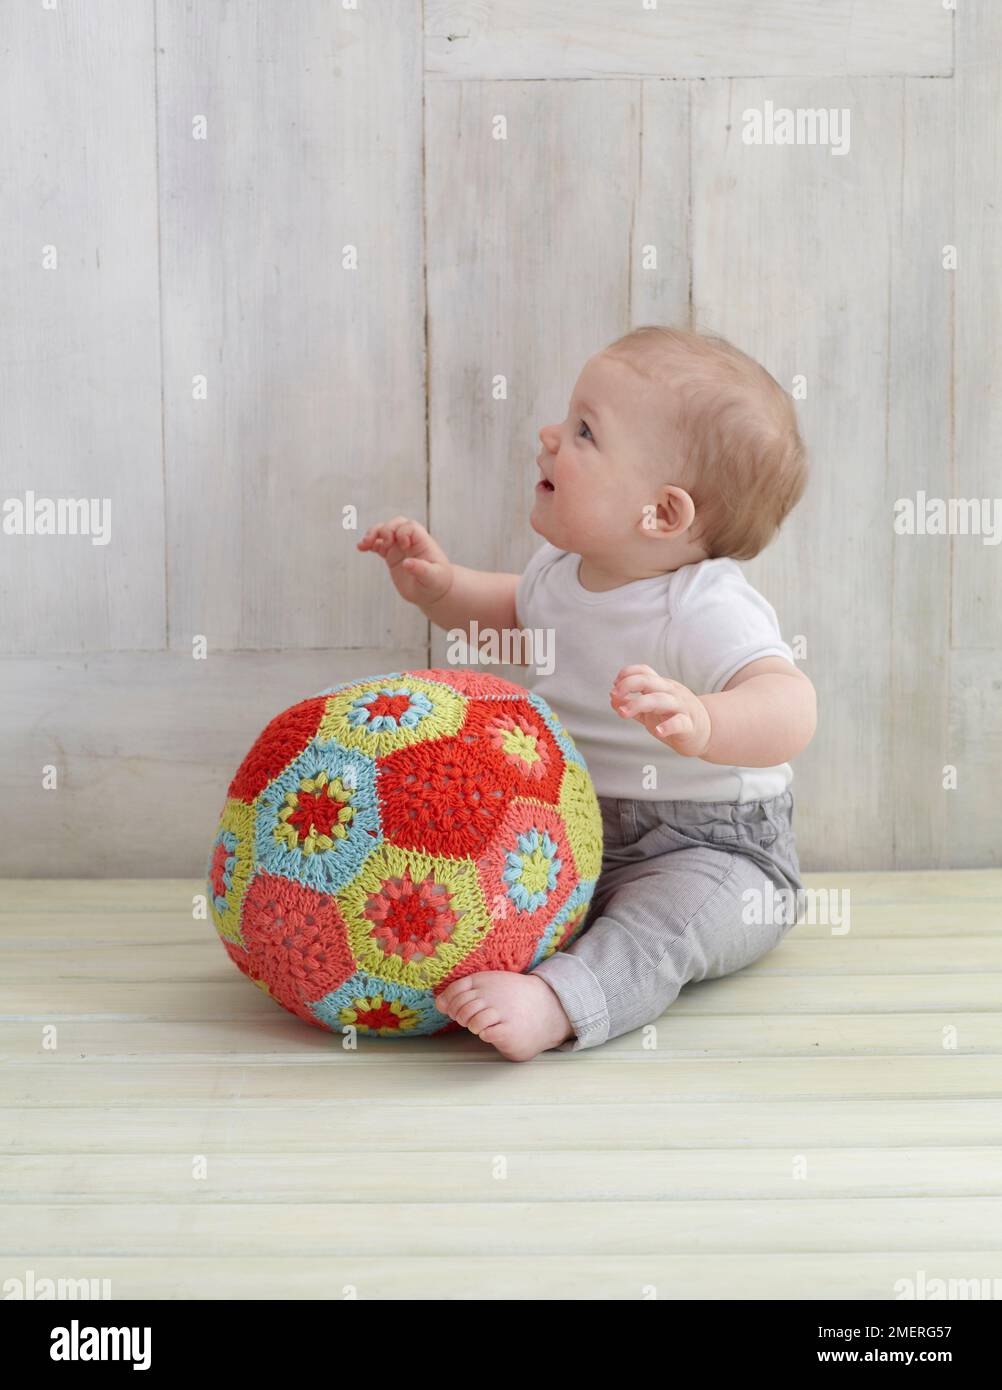 Garçon jouant avec le crocheted ball Banque D'Images